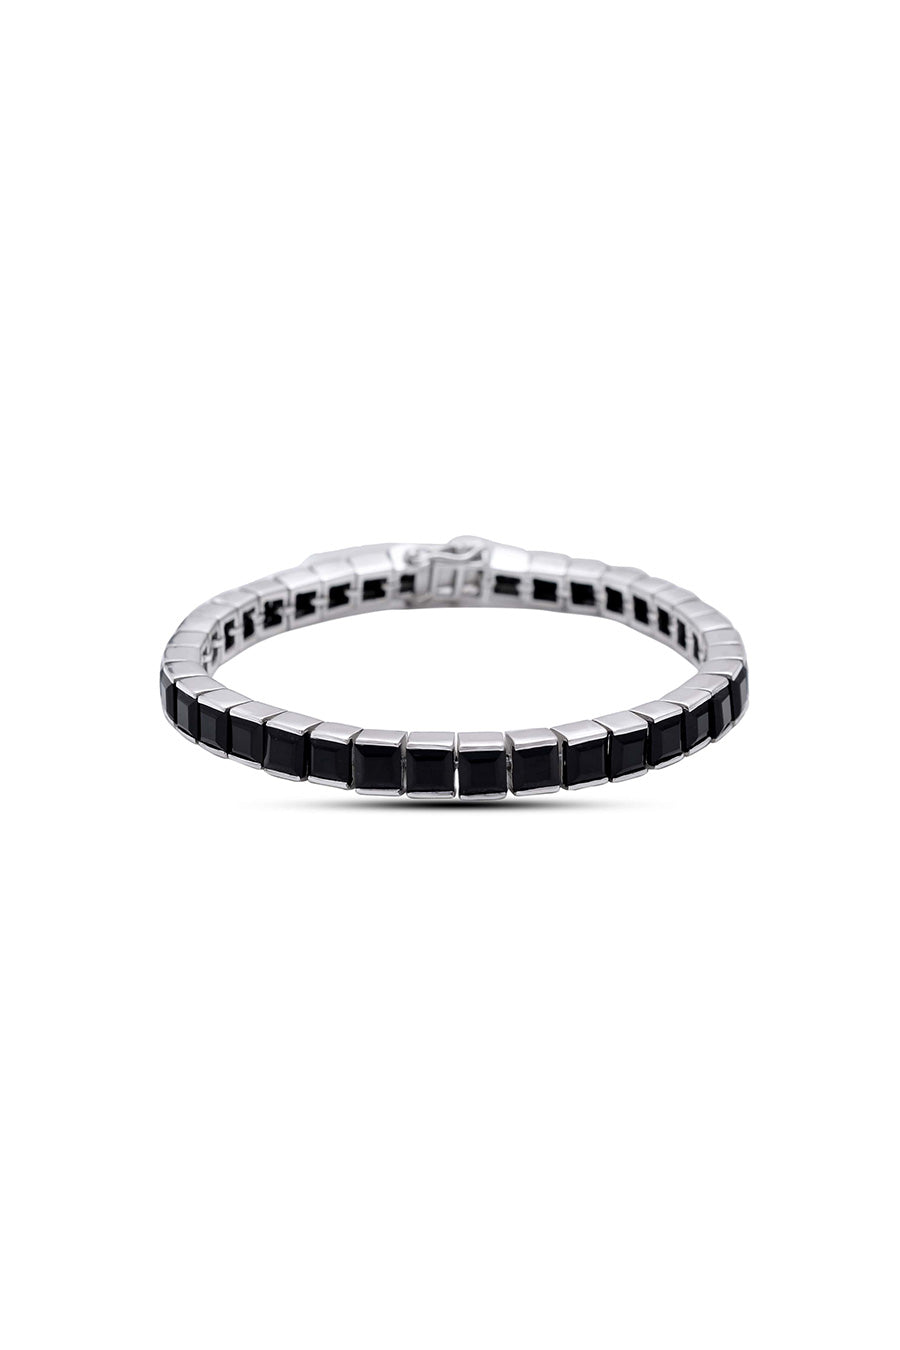 Black Onyx Tennis Bracelet in 925 Silver